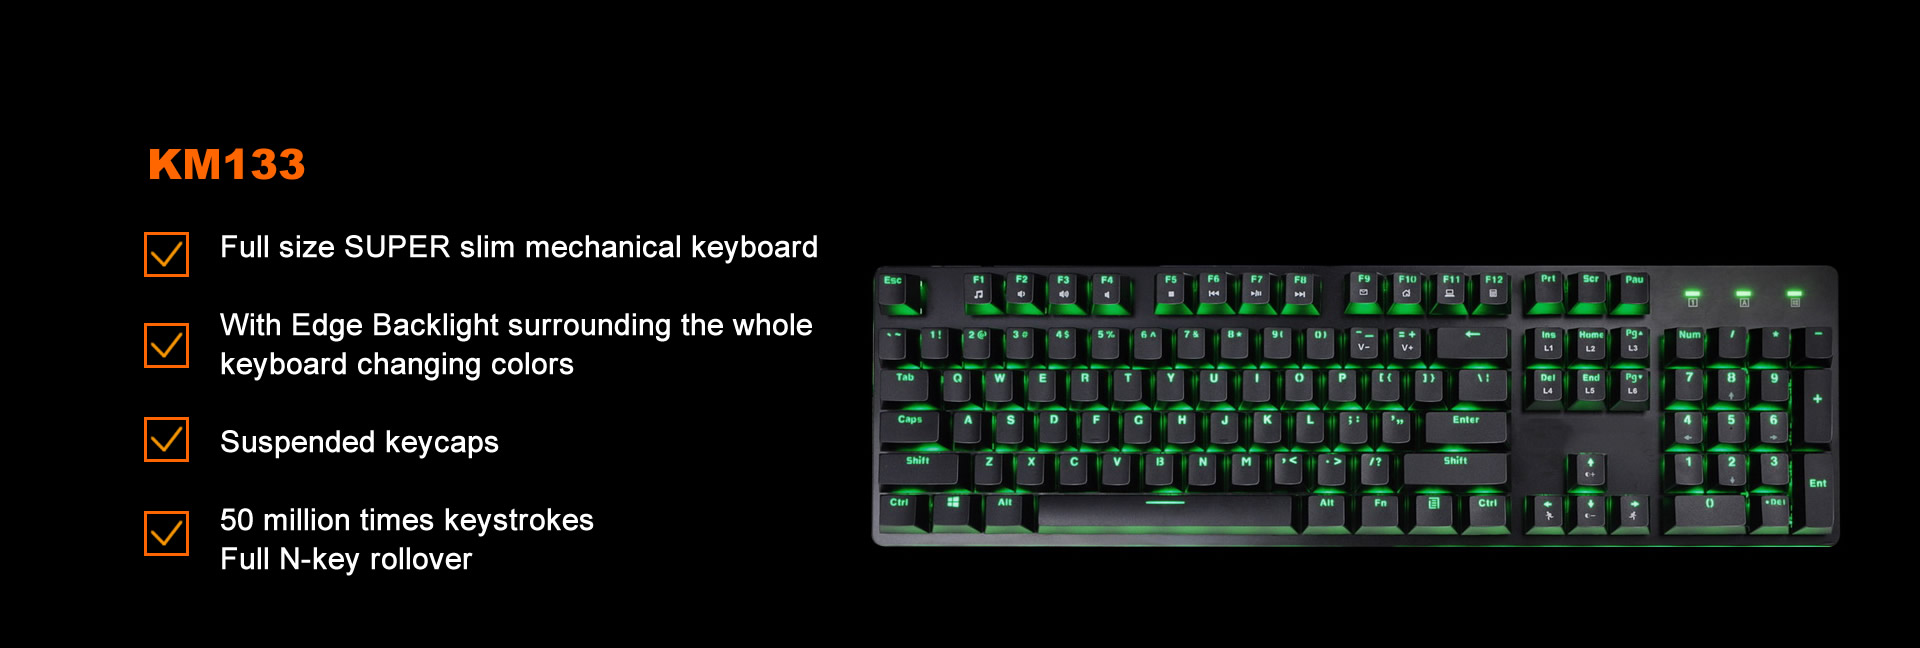 KM133 Gaming Mechanical Keyboard